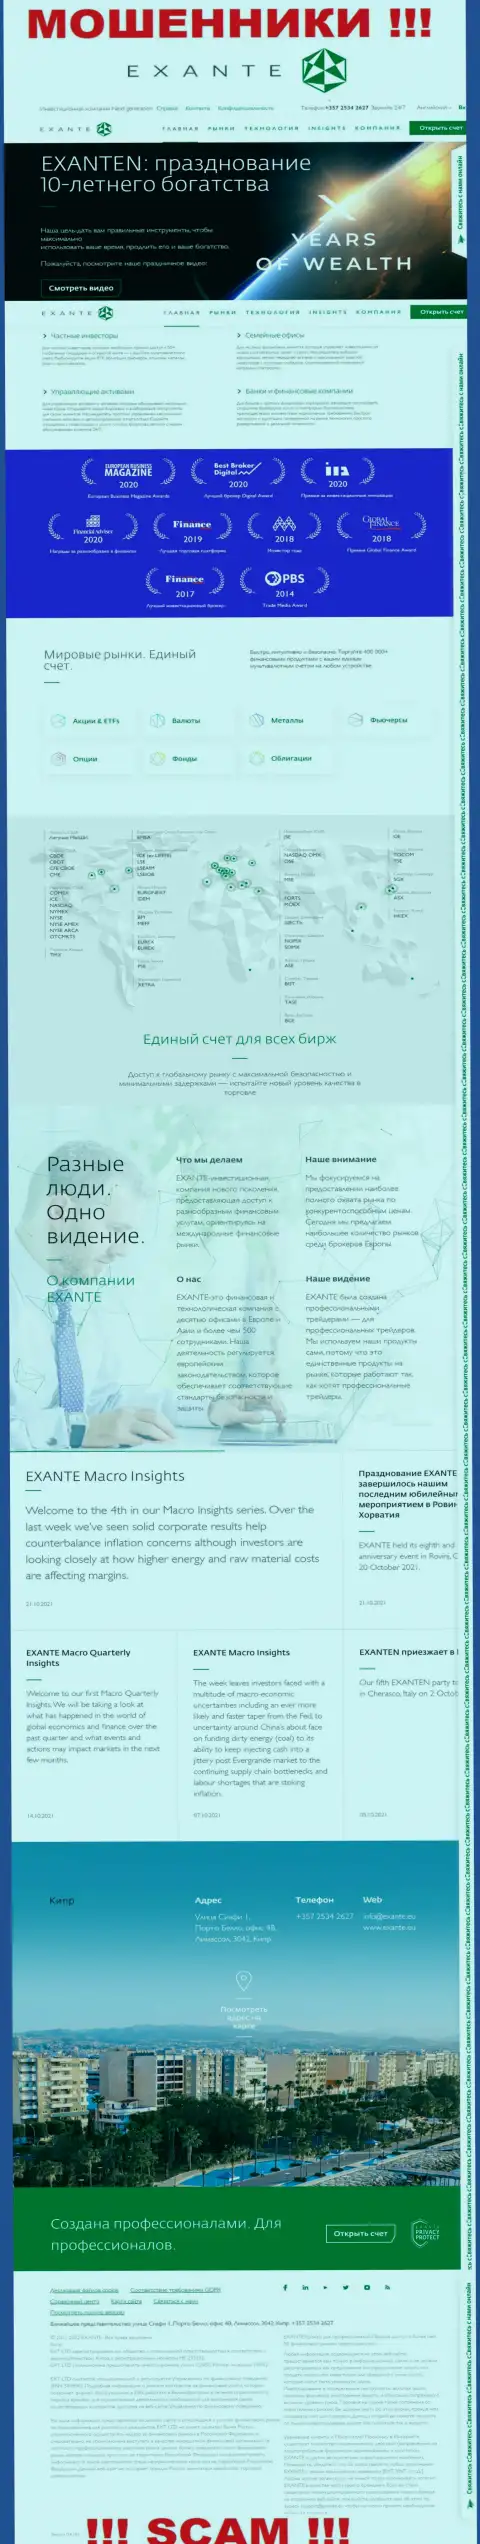 Exante Eu - это веб-сервис компании EXANTE, обычная страница разводил